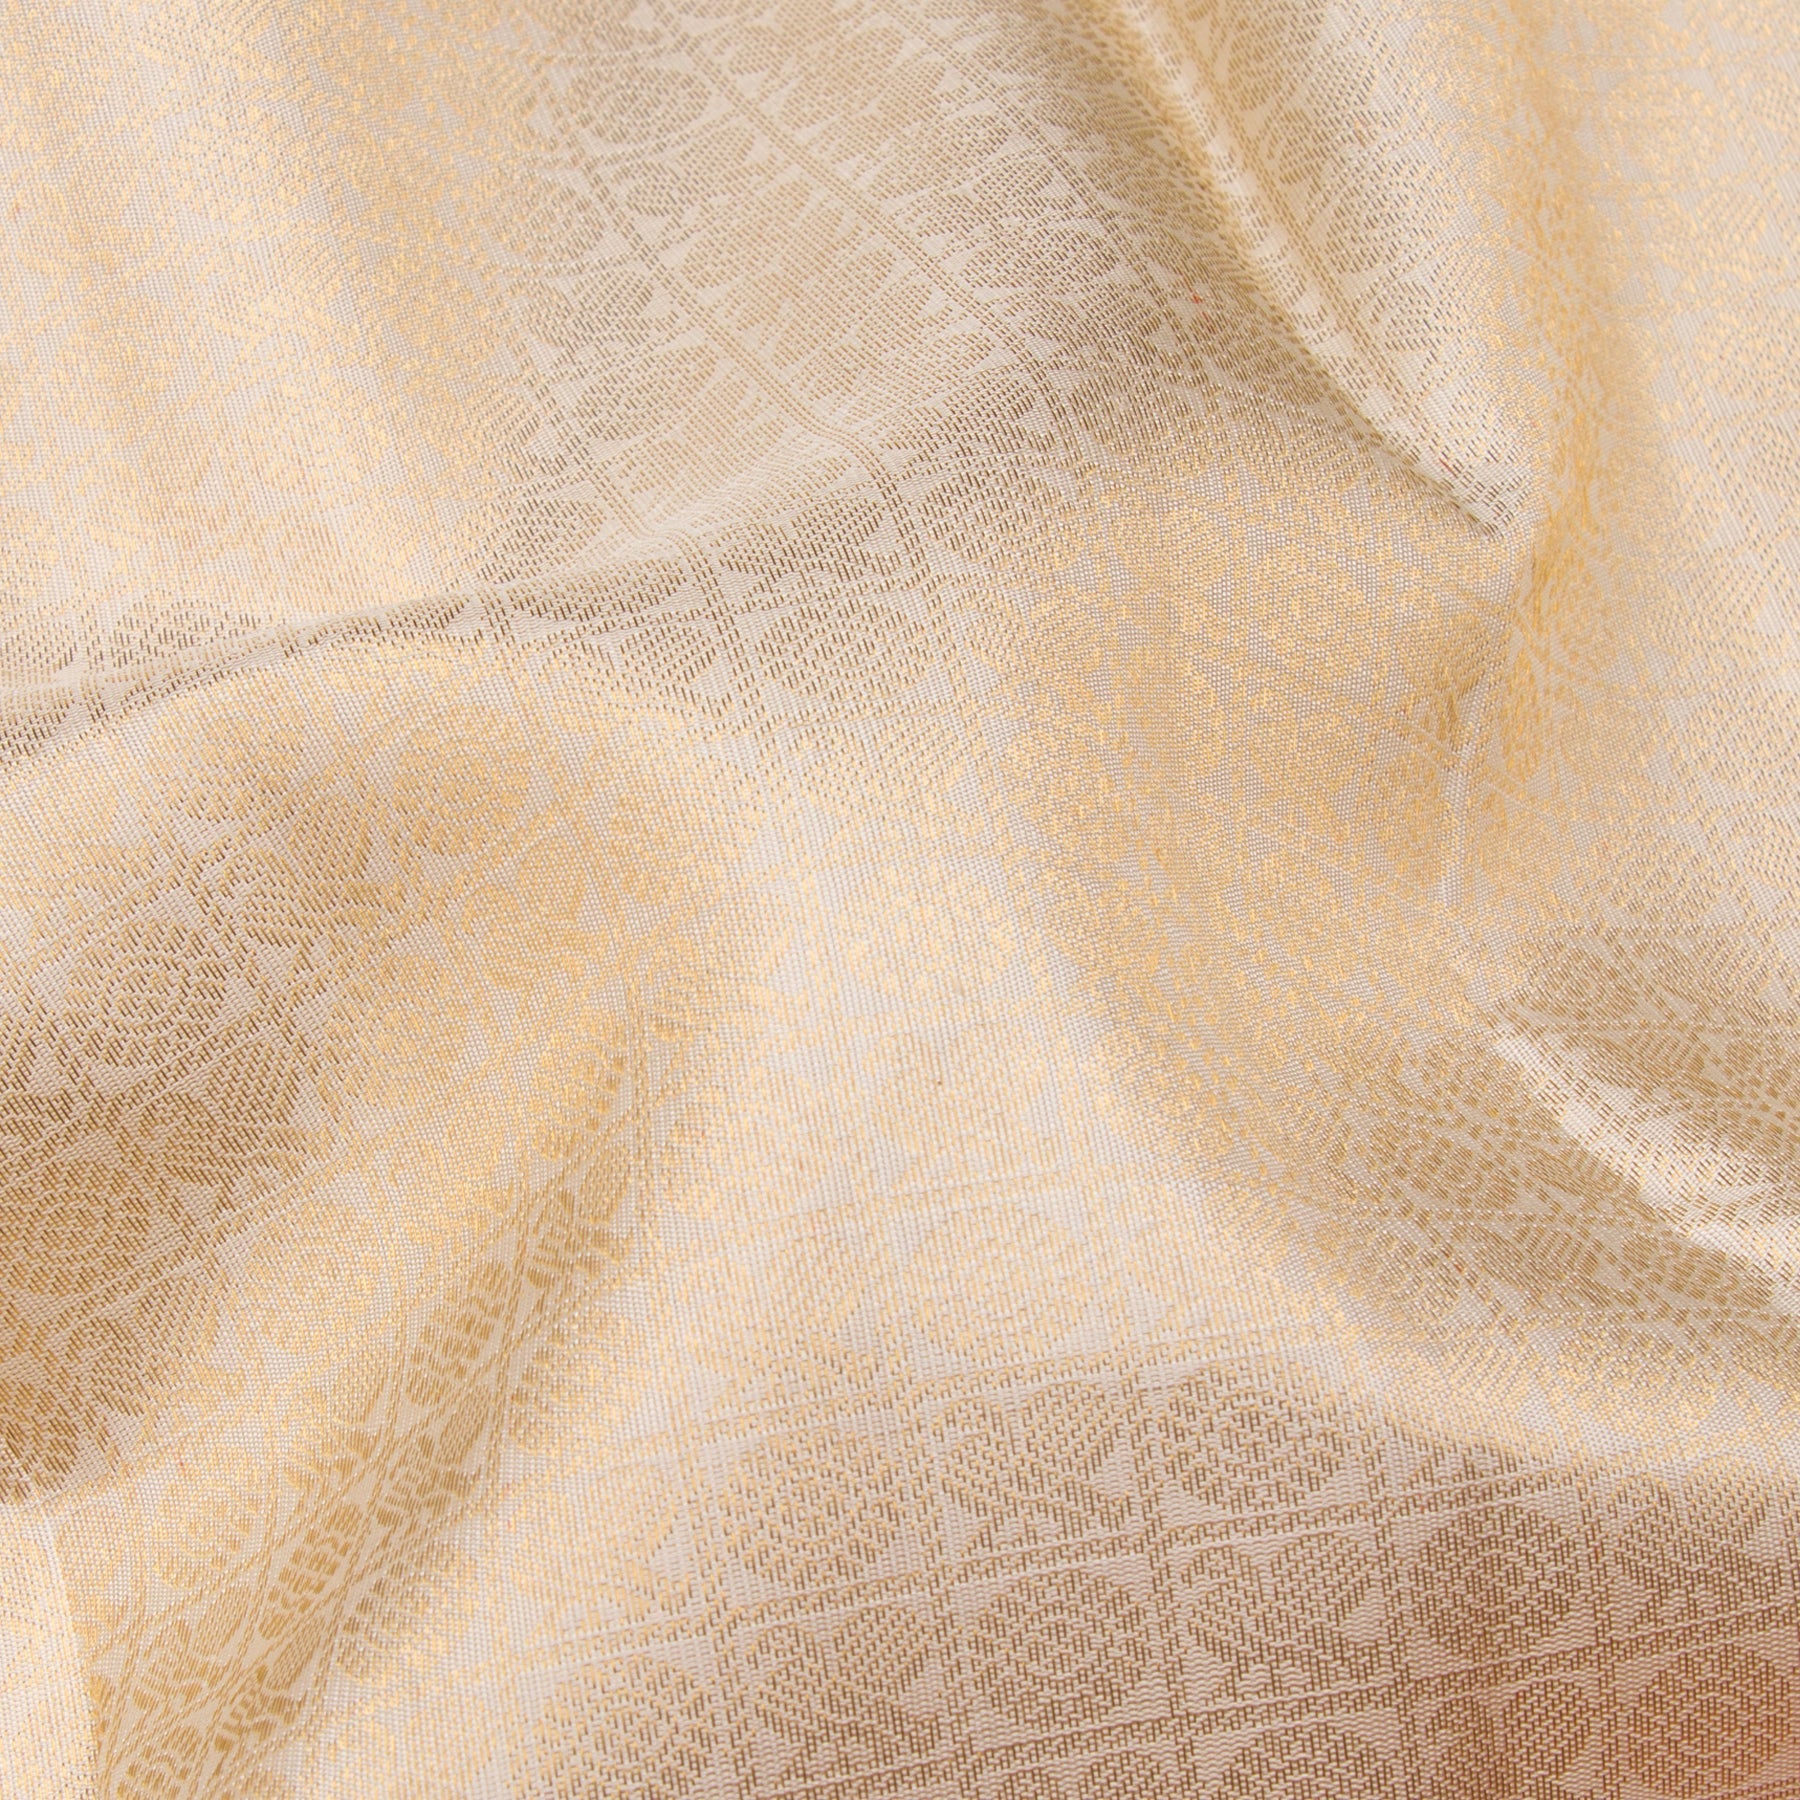 Kanakavalli Kanjivaram Silk Sari 23-110-HS001-11590 - Fabric View